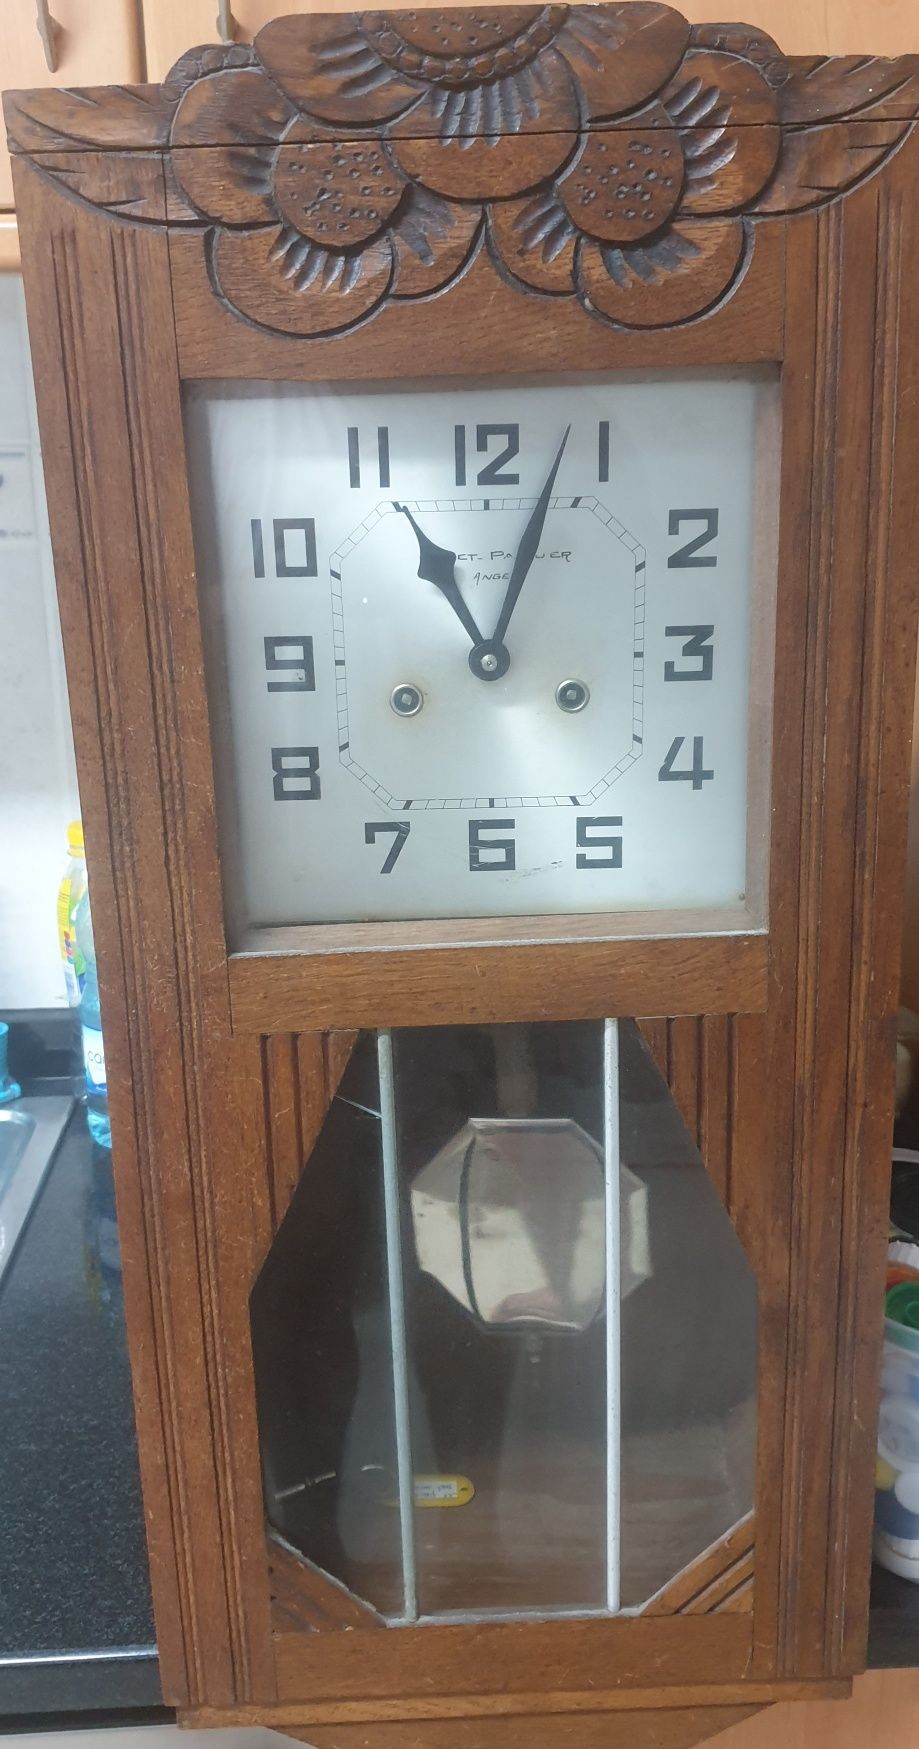 Relógio de sala muito antigo em madeira.